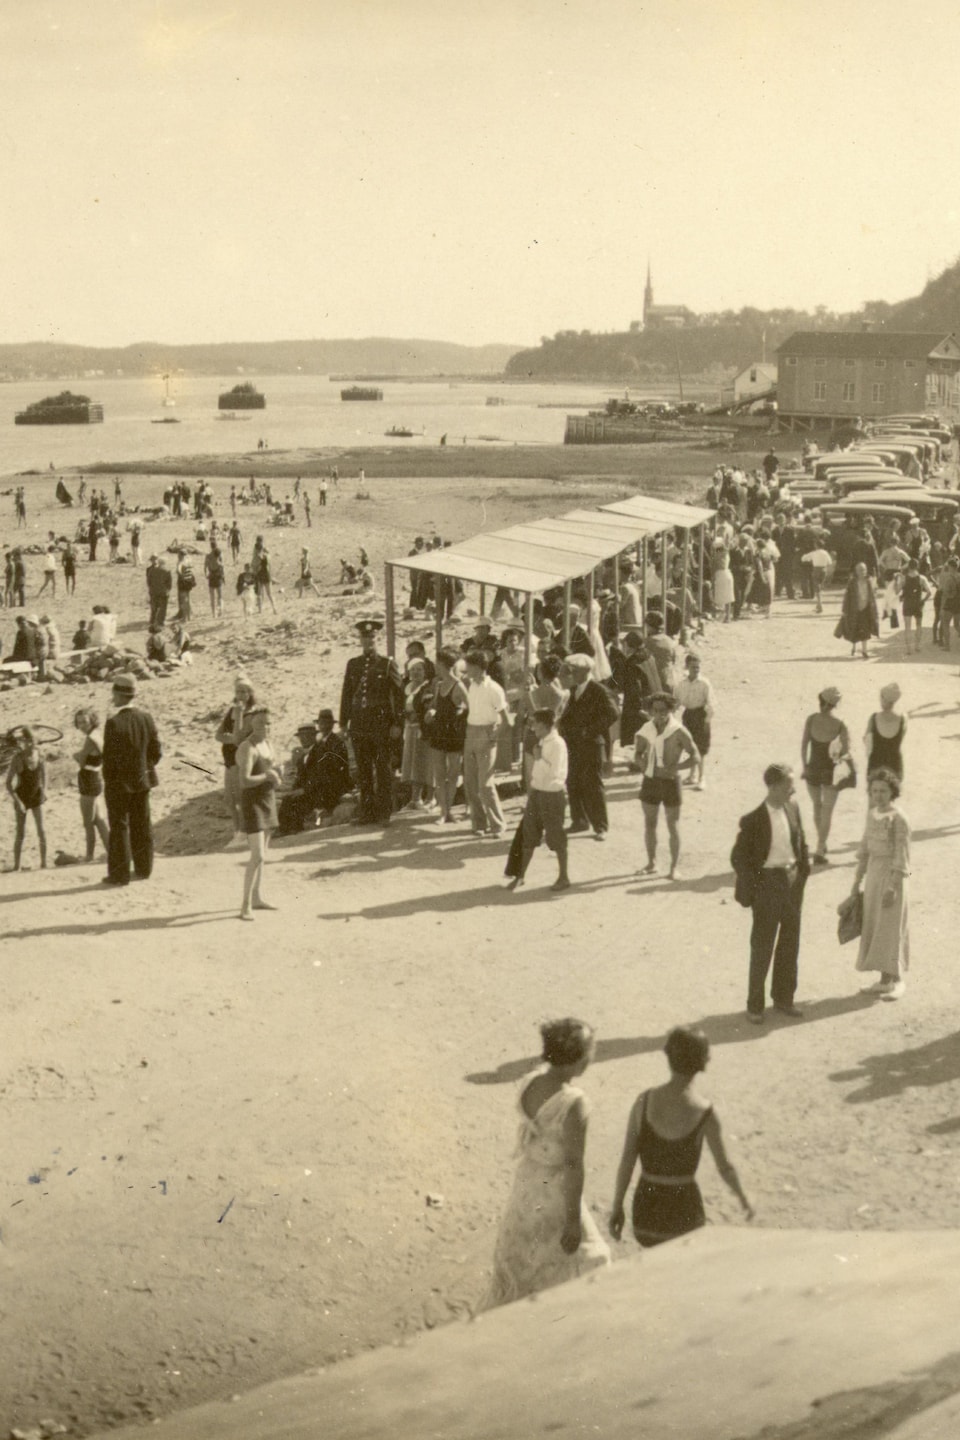 Vue panoramique de la plage de l'anse au Foulon en 1934.